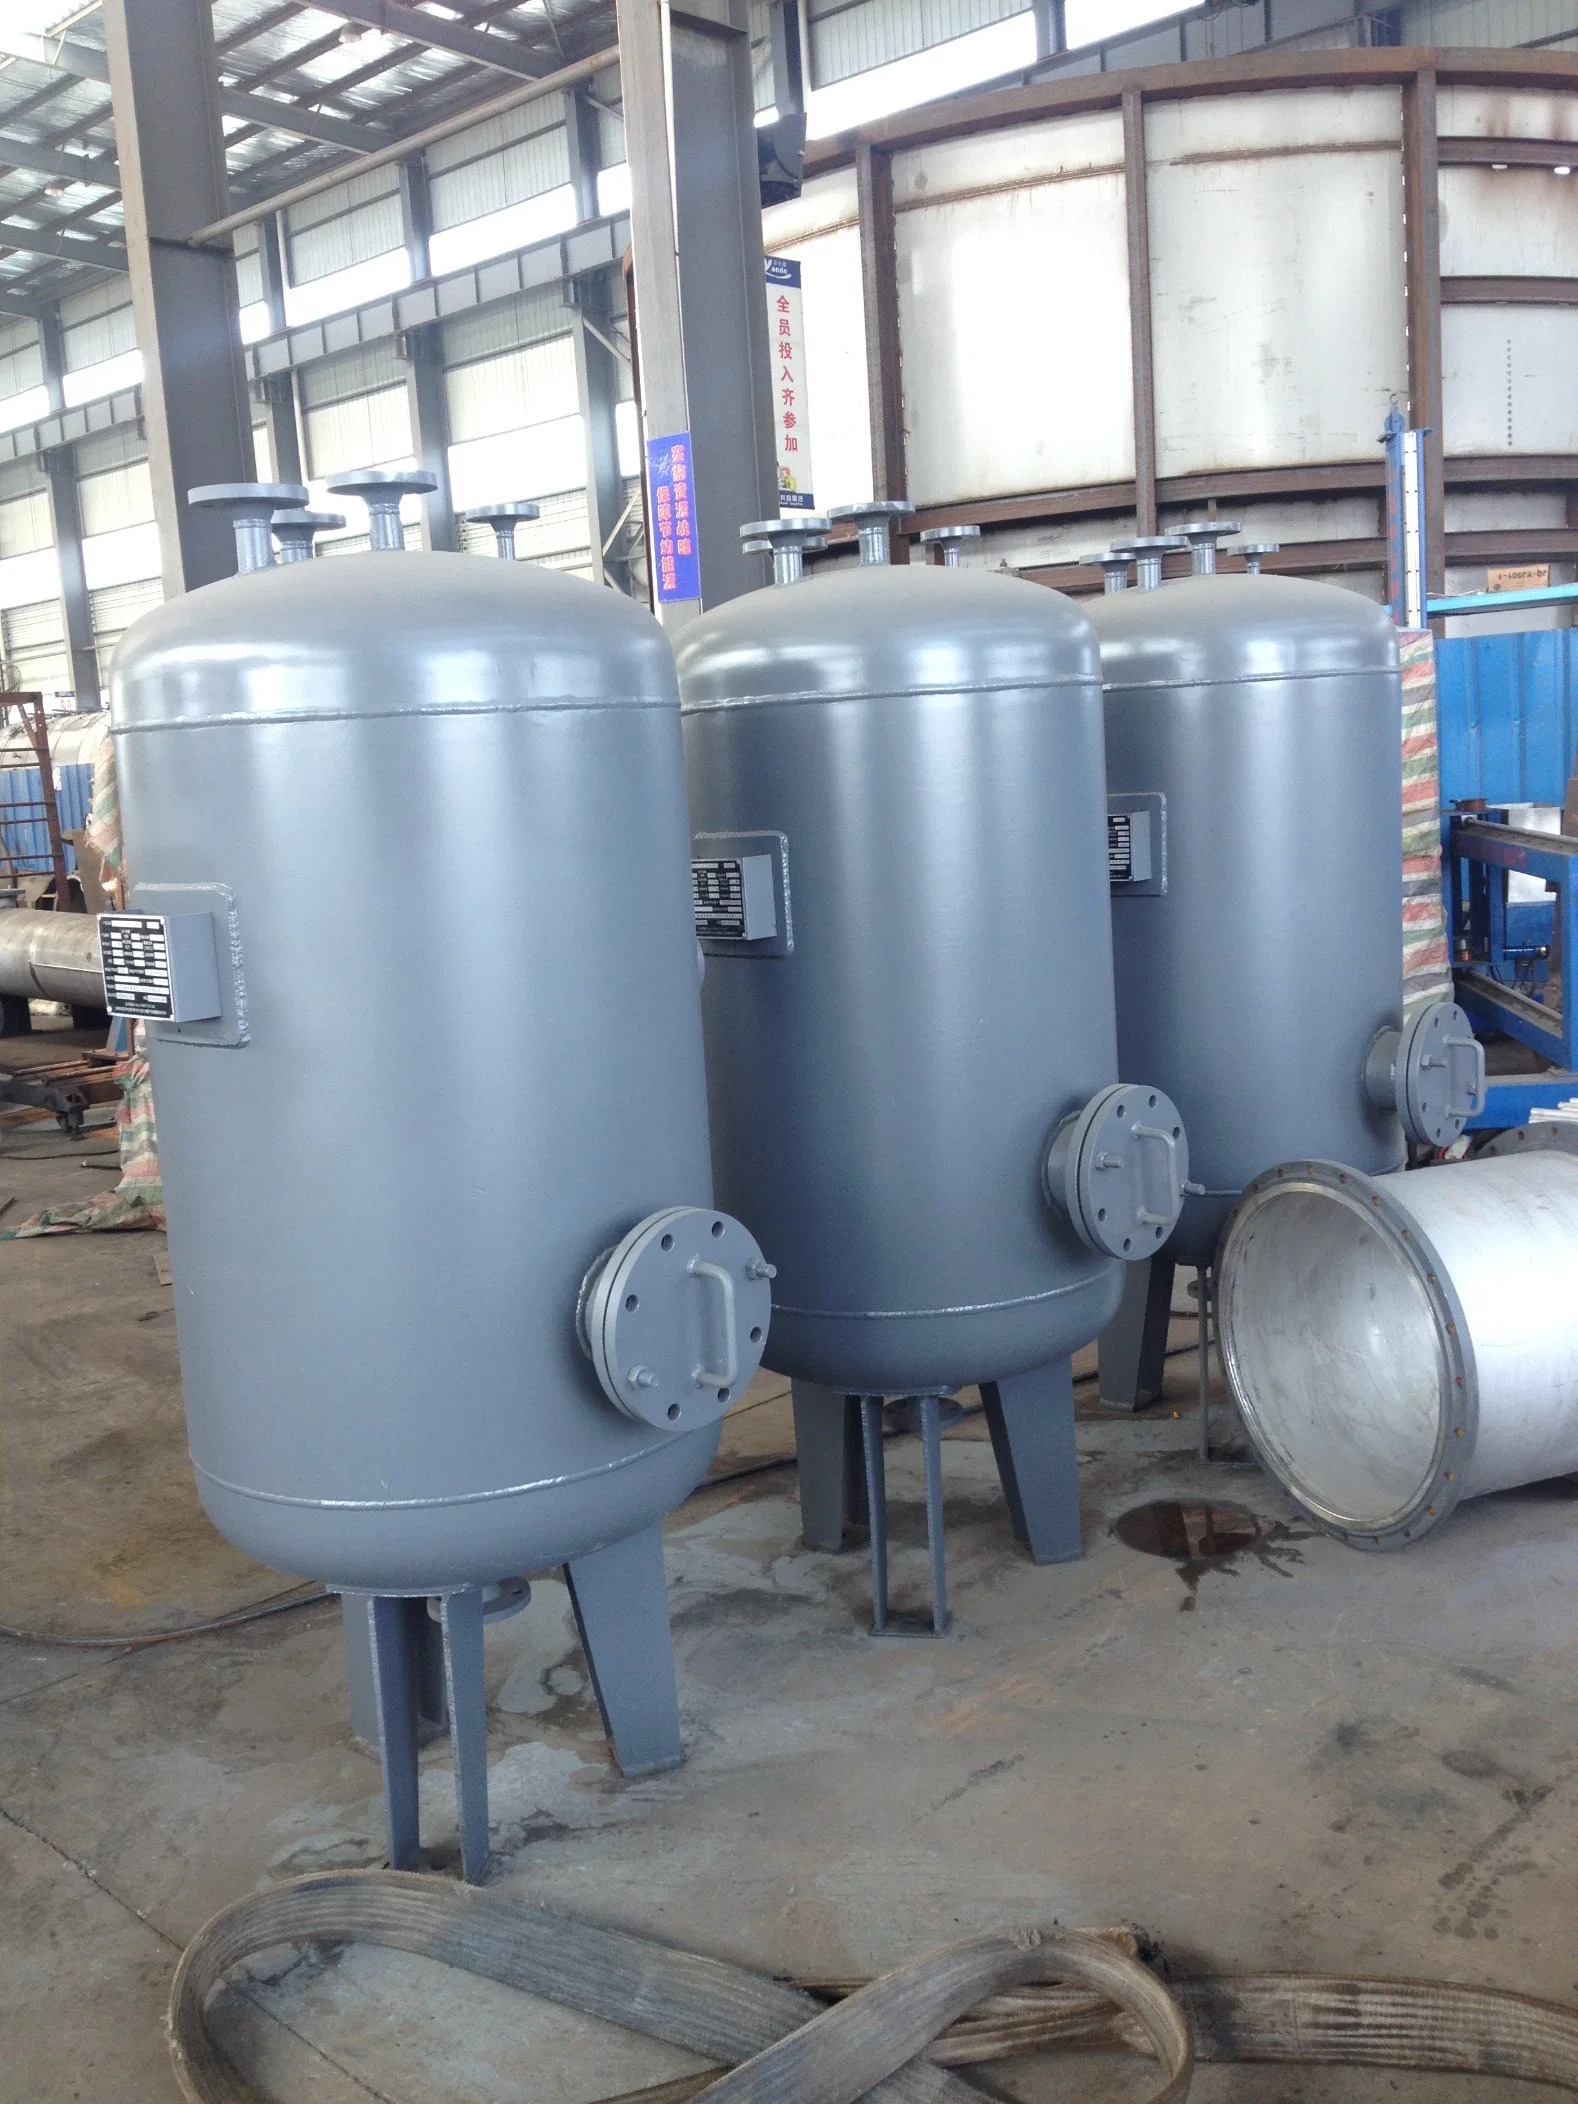 Conteneur de récipient sous pression pour réservoir tampon pour la fabrication de produits chimiques ASME